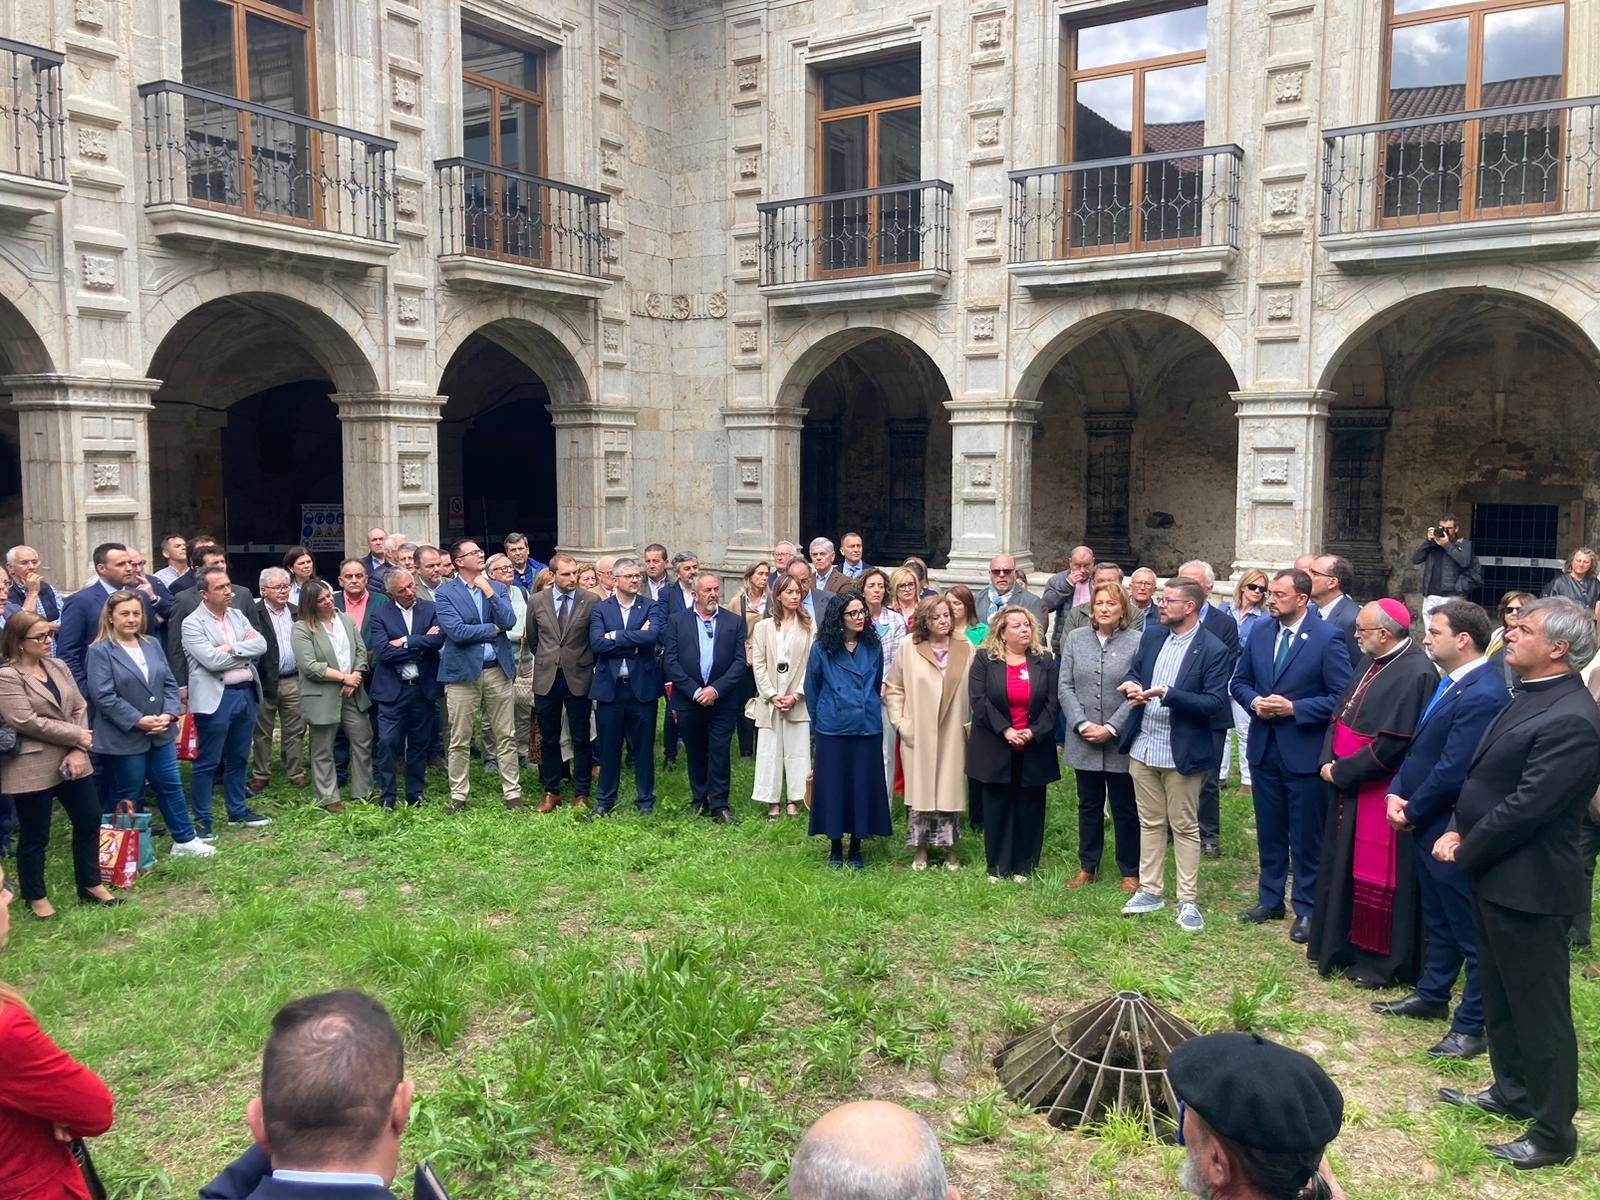 Día histórico en Salas en la celebración del milenario del Monasterio de Cornellana